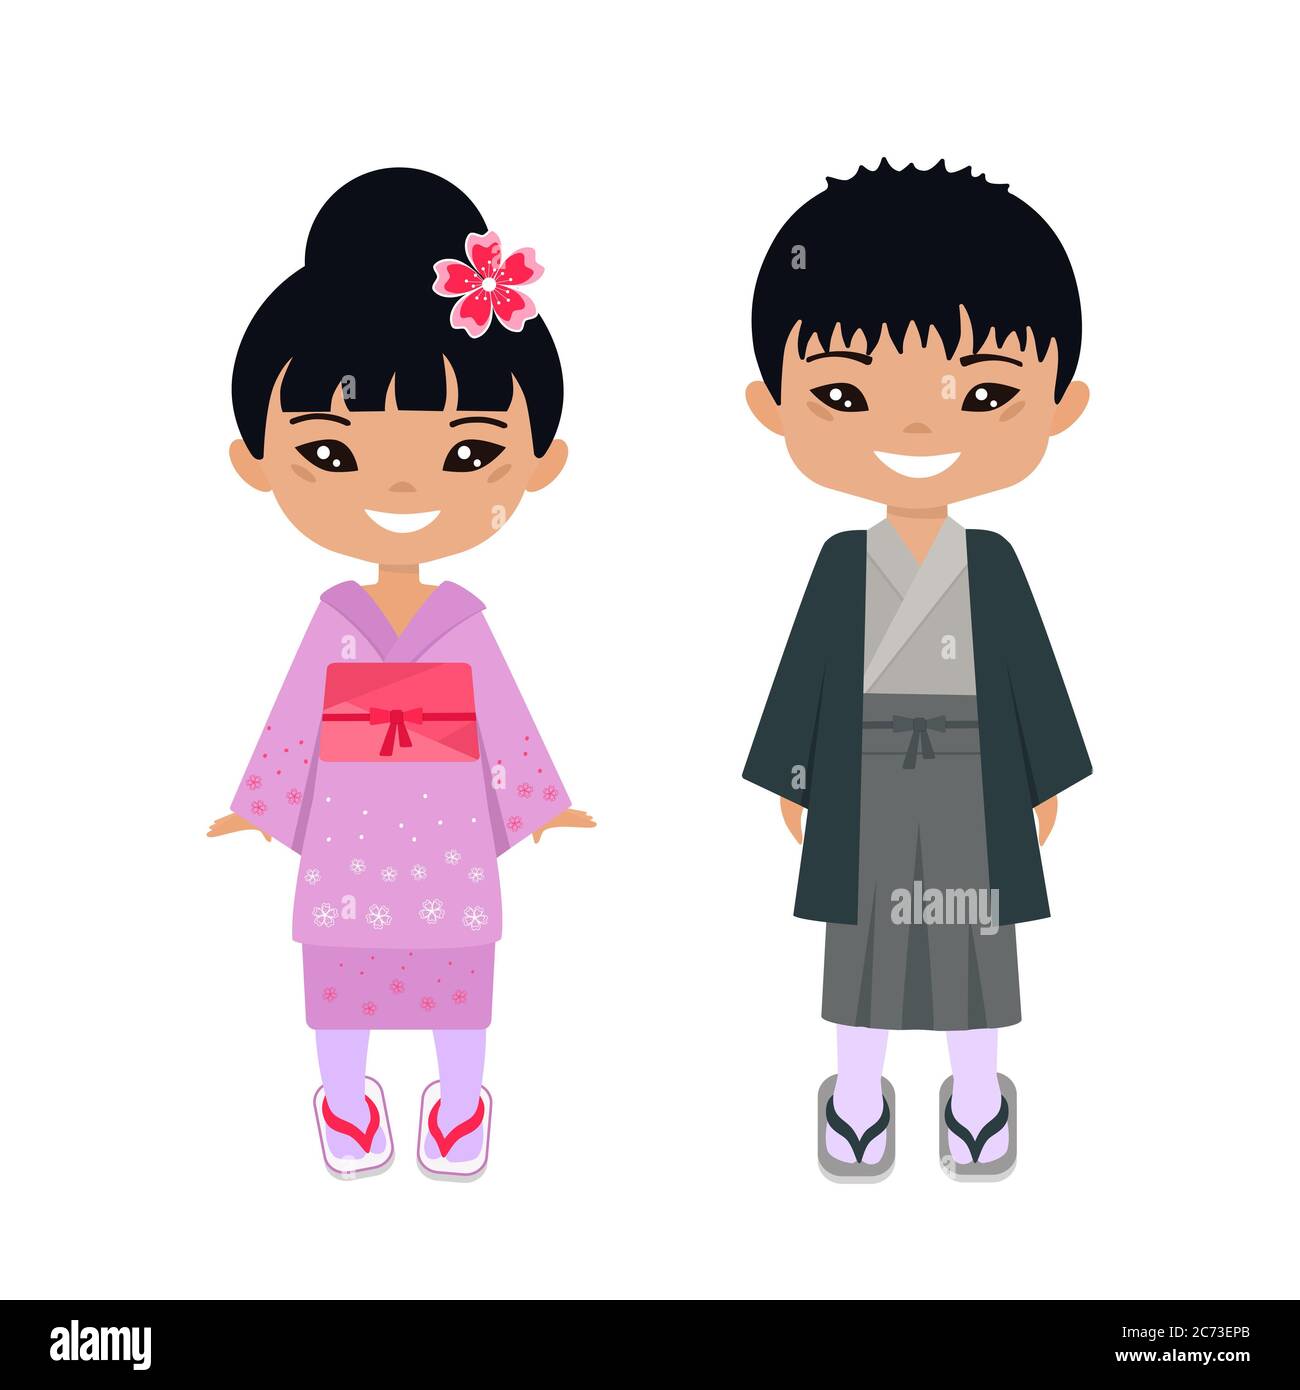 Personajes de dibujos animados japoneses Imágenes recortadas de stock -  Alamy